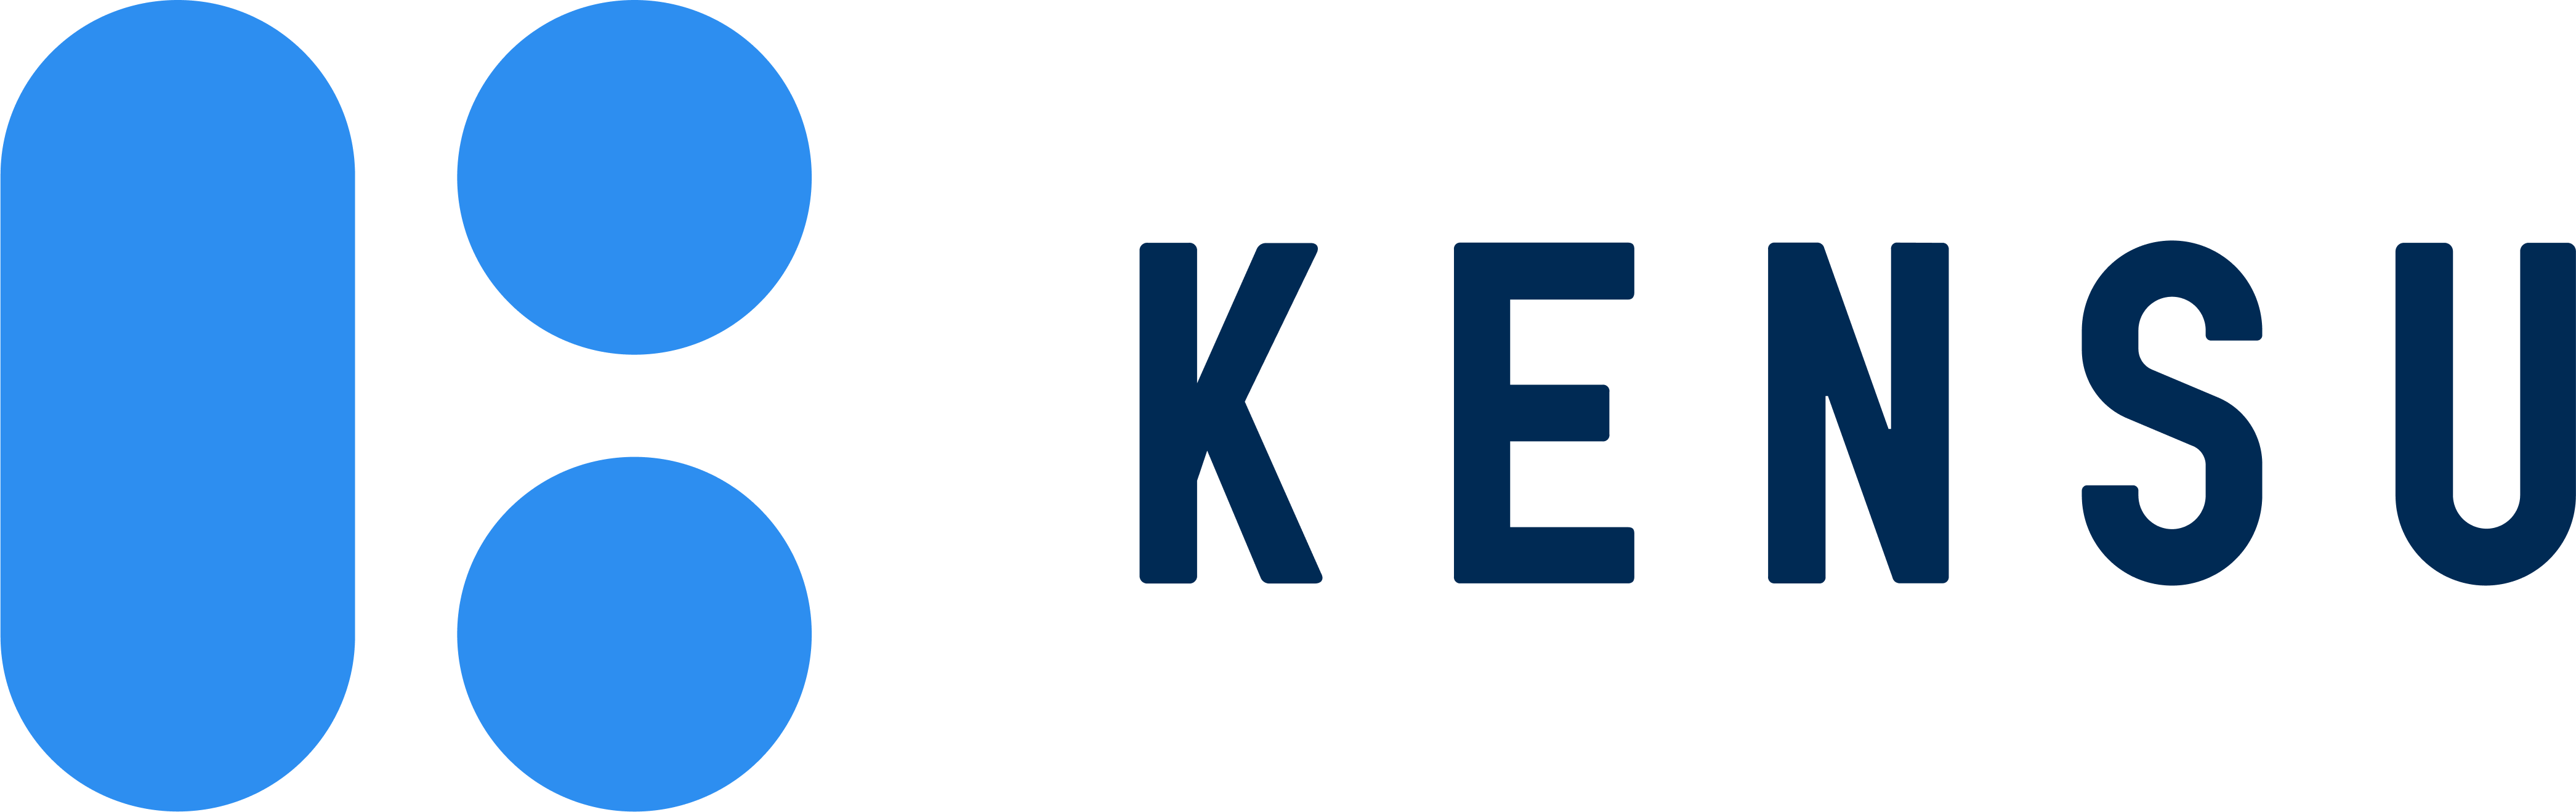 Logo kensu flashy blue + navy